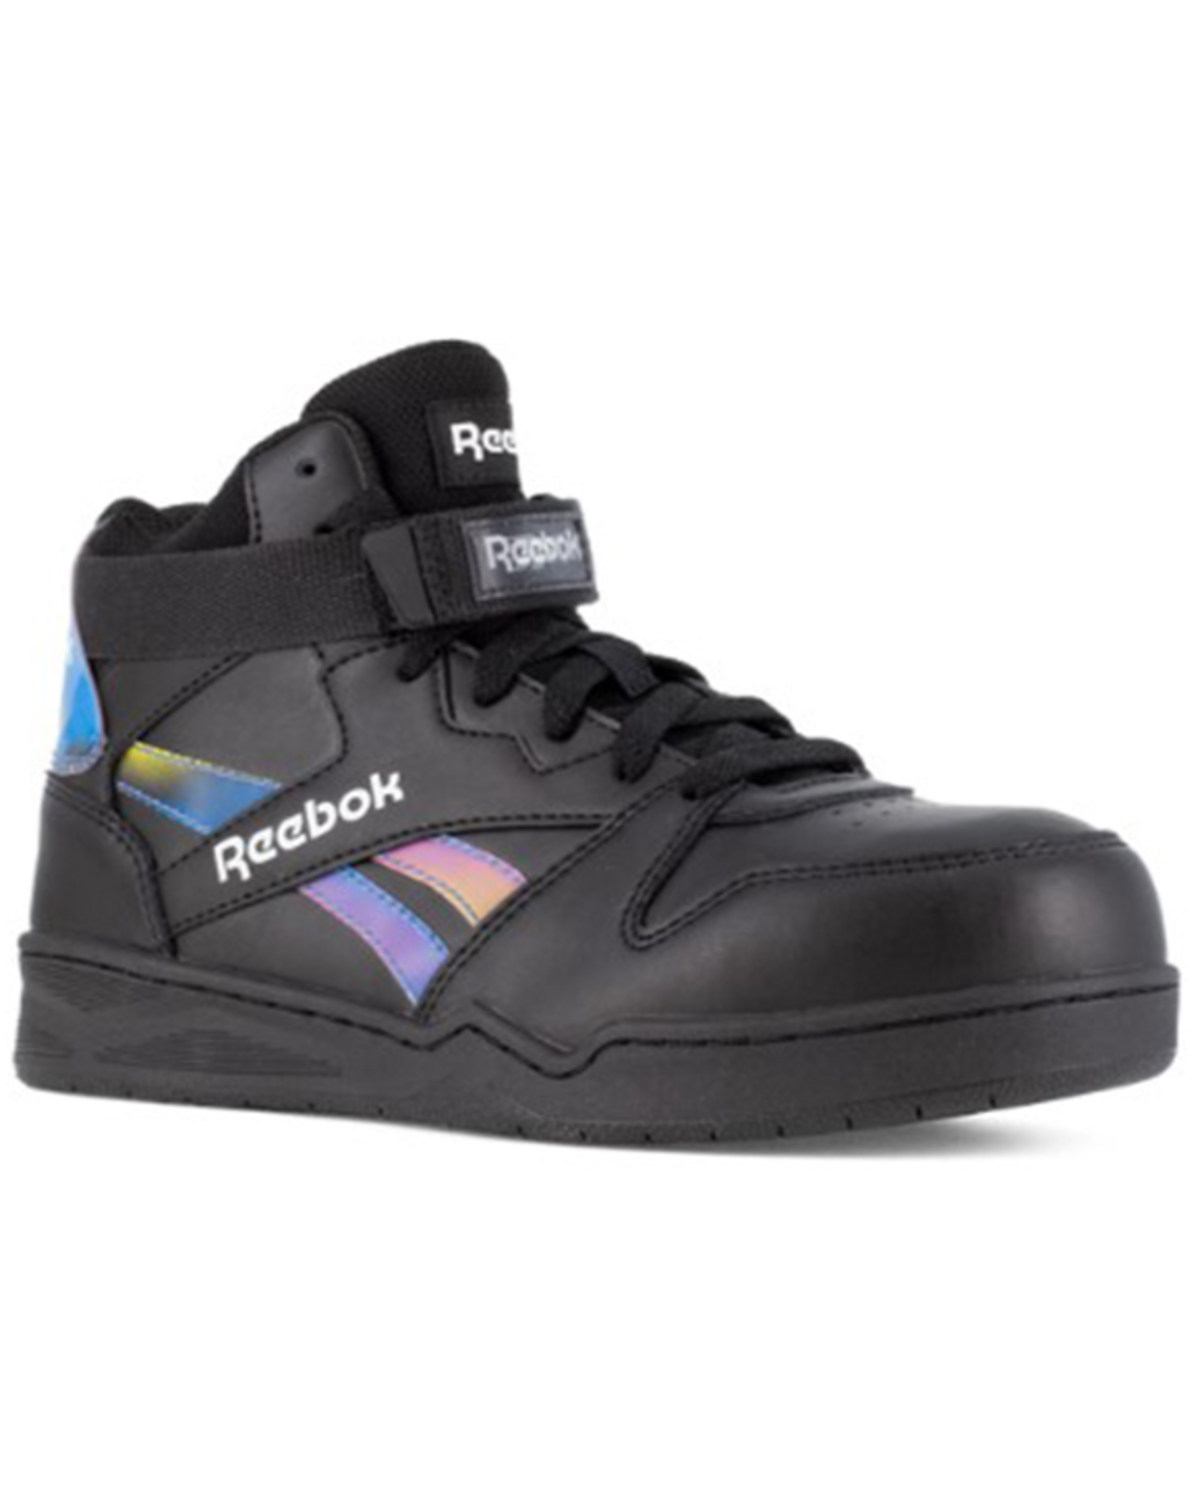 Reebok Women's High Top Work Sneakers - Composite Toe